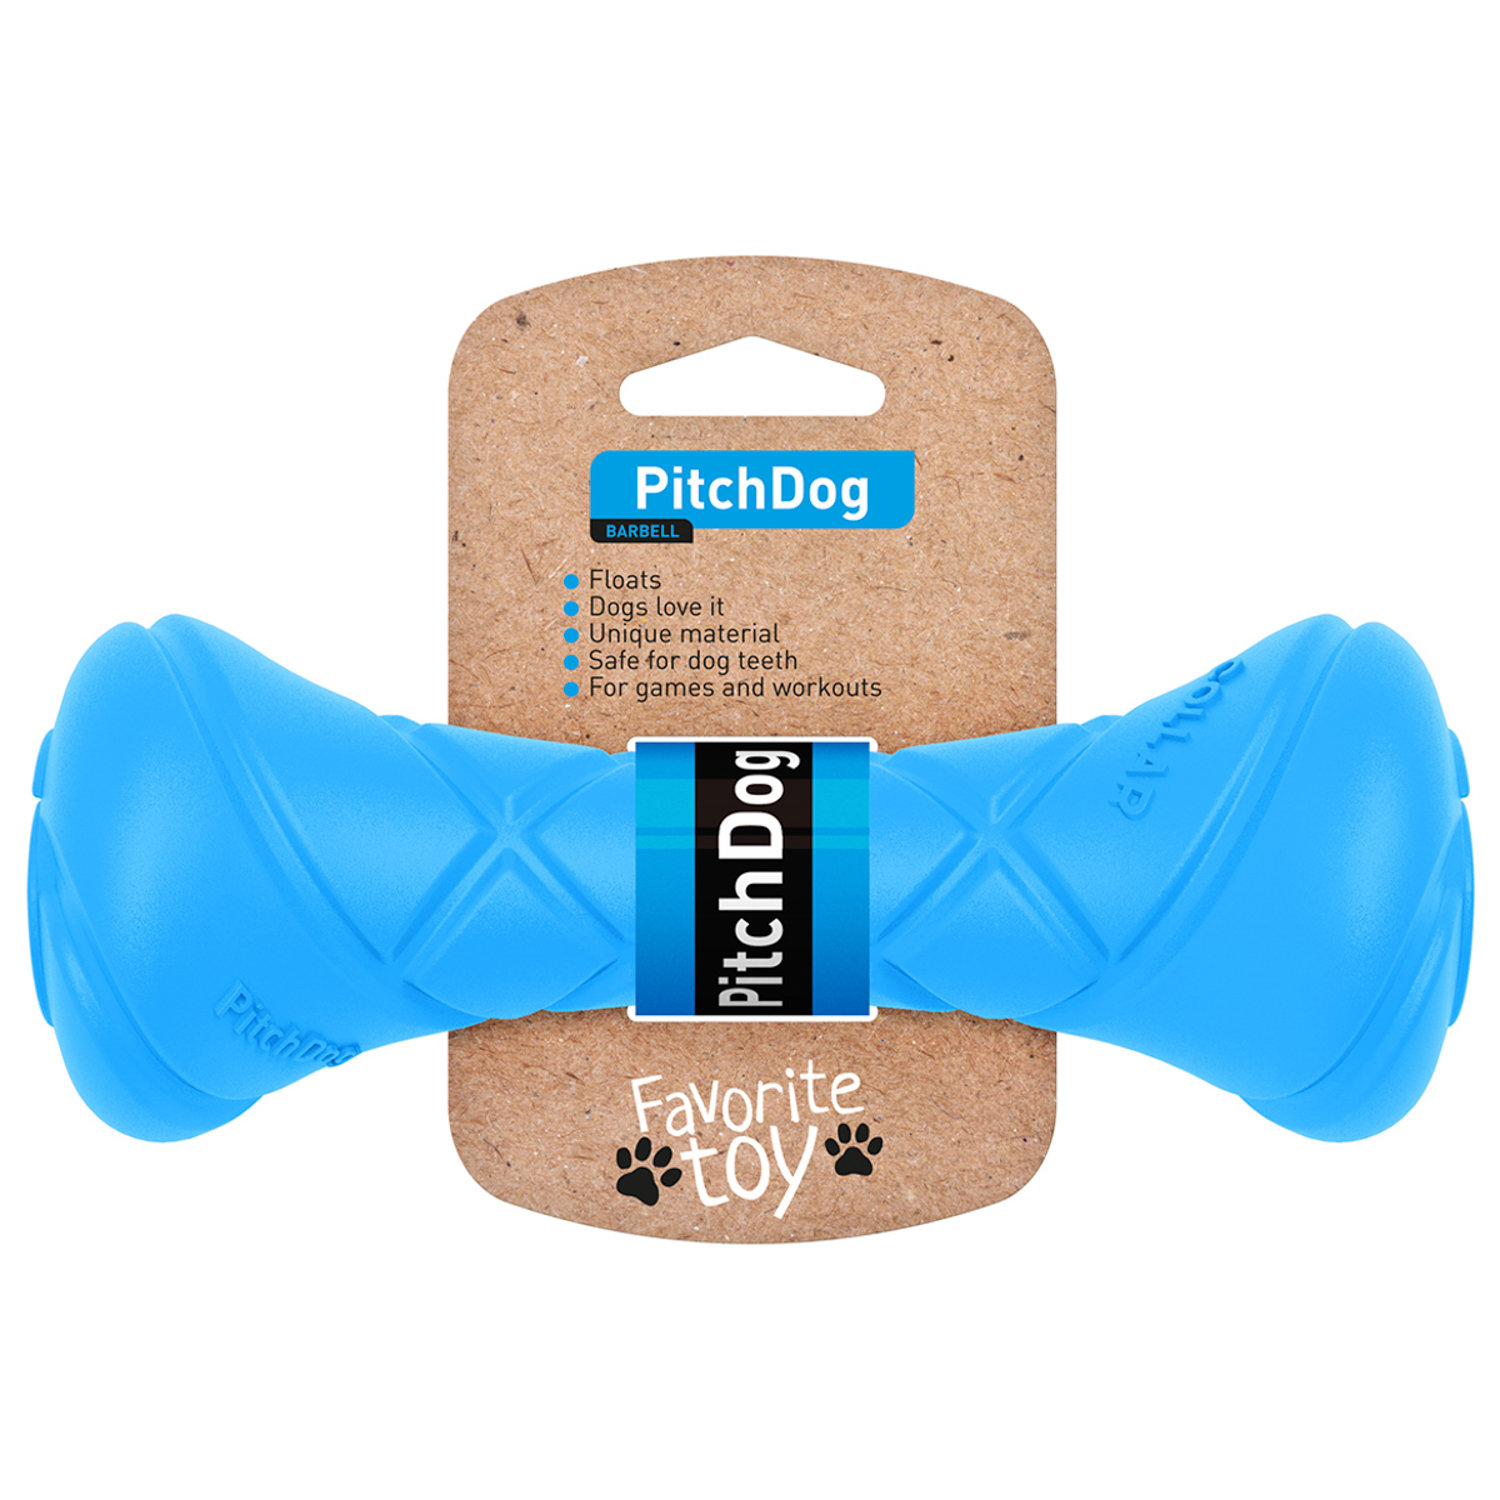 Грейфер (игрушка для перетягивания) для собак PitchDog , синий, 19 см, диаметр 7 см